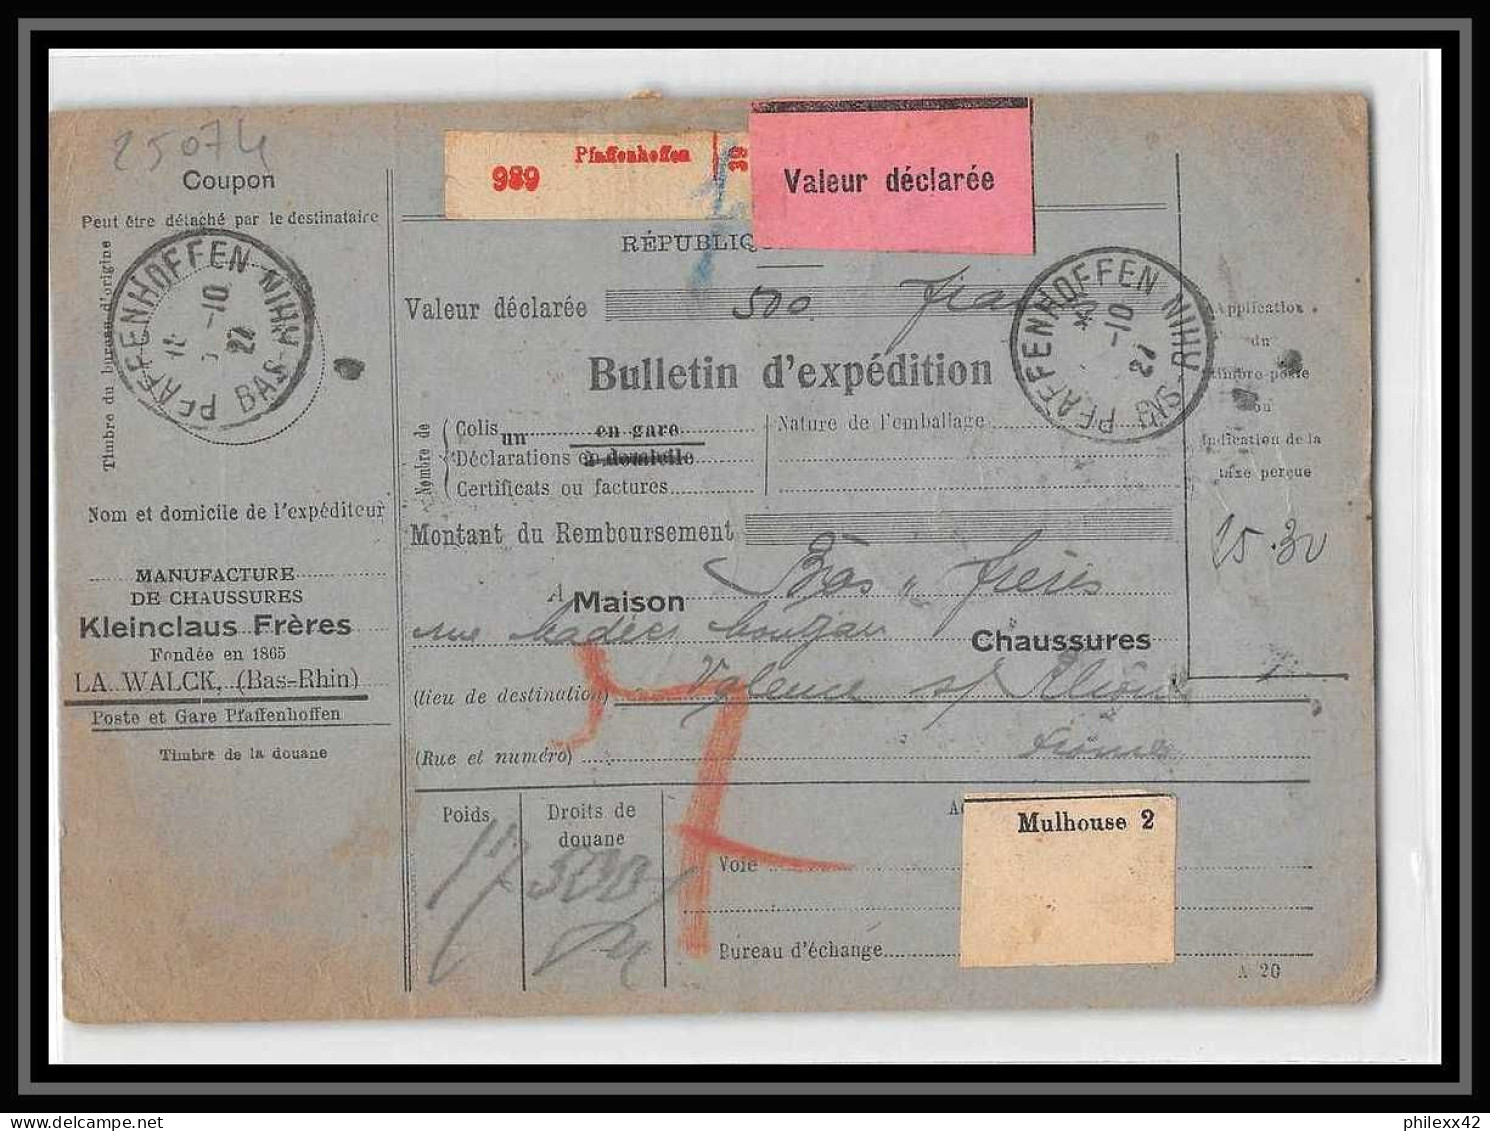 25074 Bulletin D'expédition France Colis Postaux Fiscal Haut Rhin 1927 Pfaffenhoff Merson 145+207 Alsace-Lorraine  - Briefe U. Dokumente